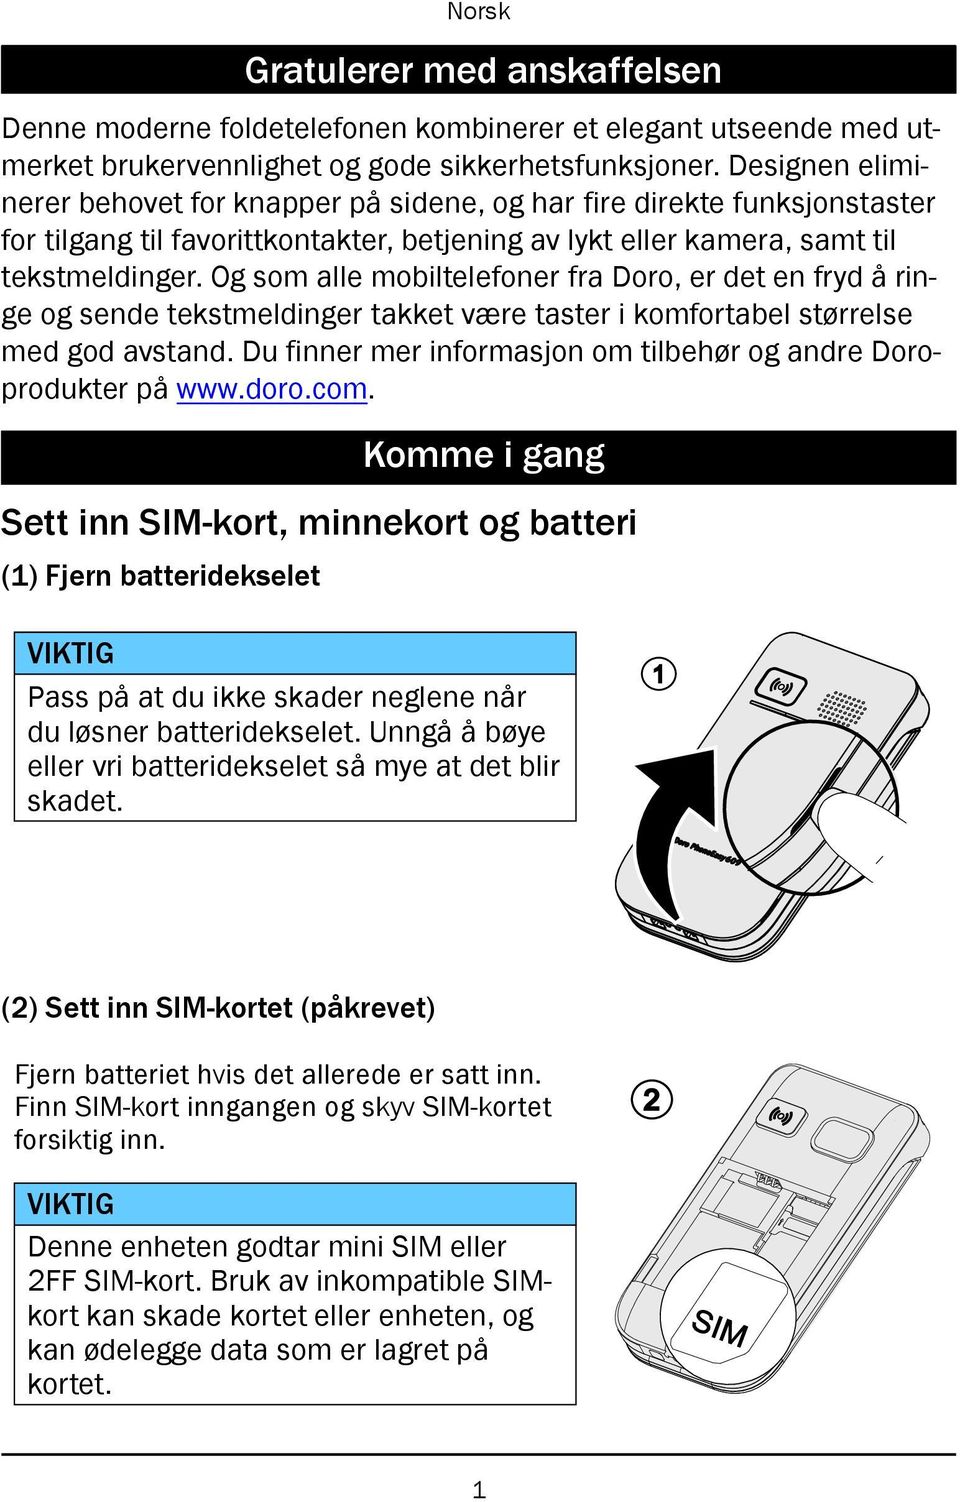 Doro PhoneEasy 609. Norsk - PDF Gratis nedlasting